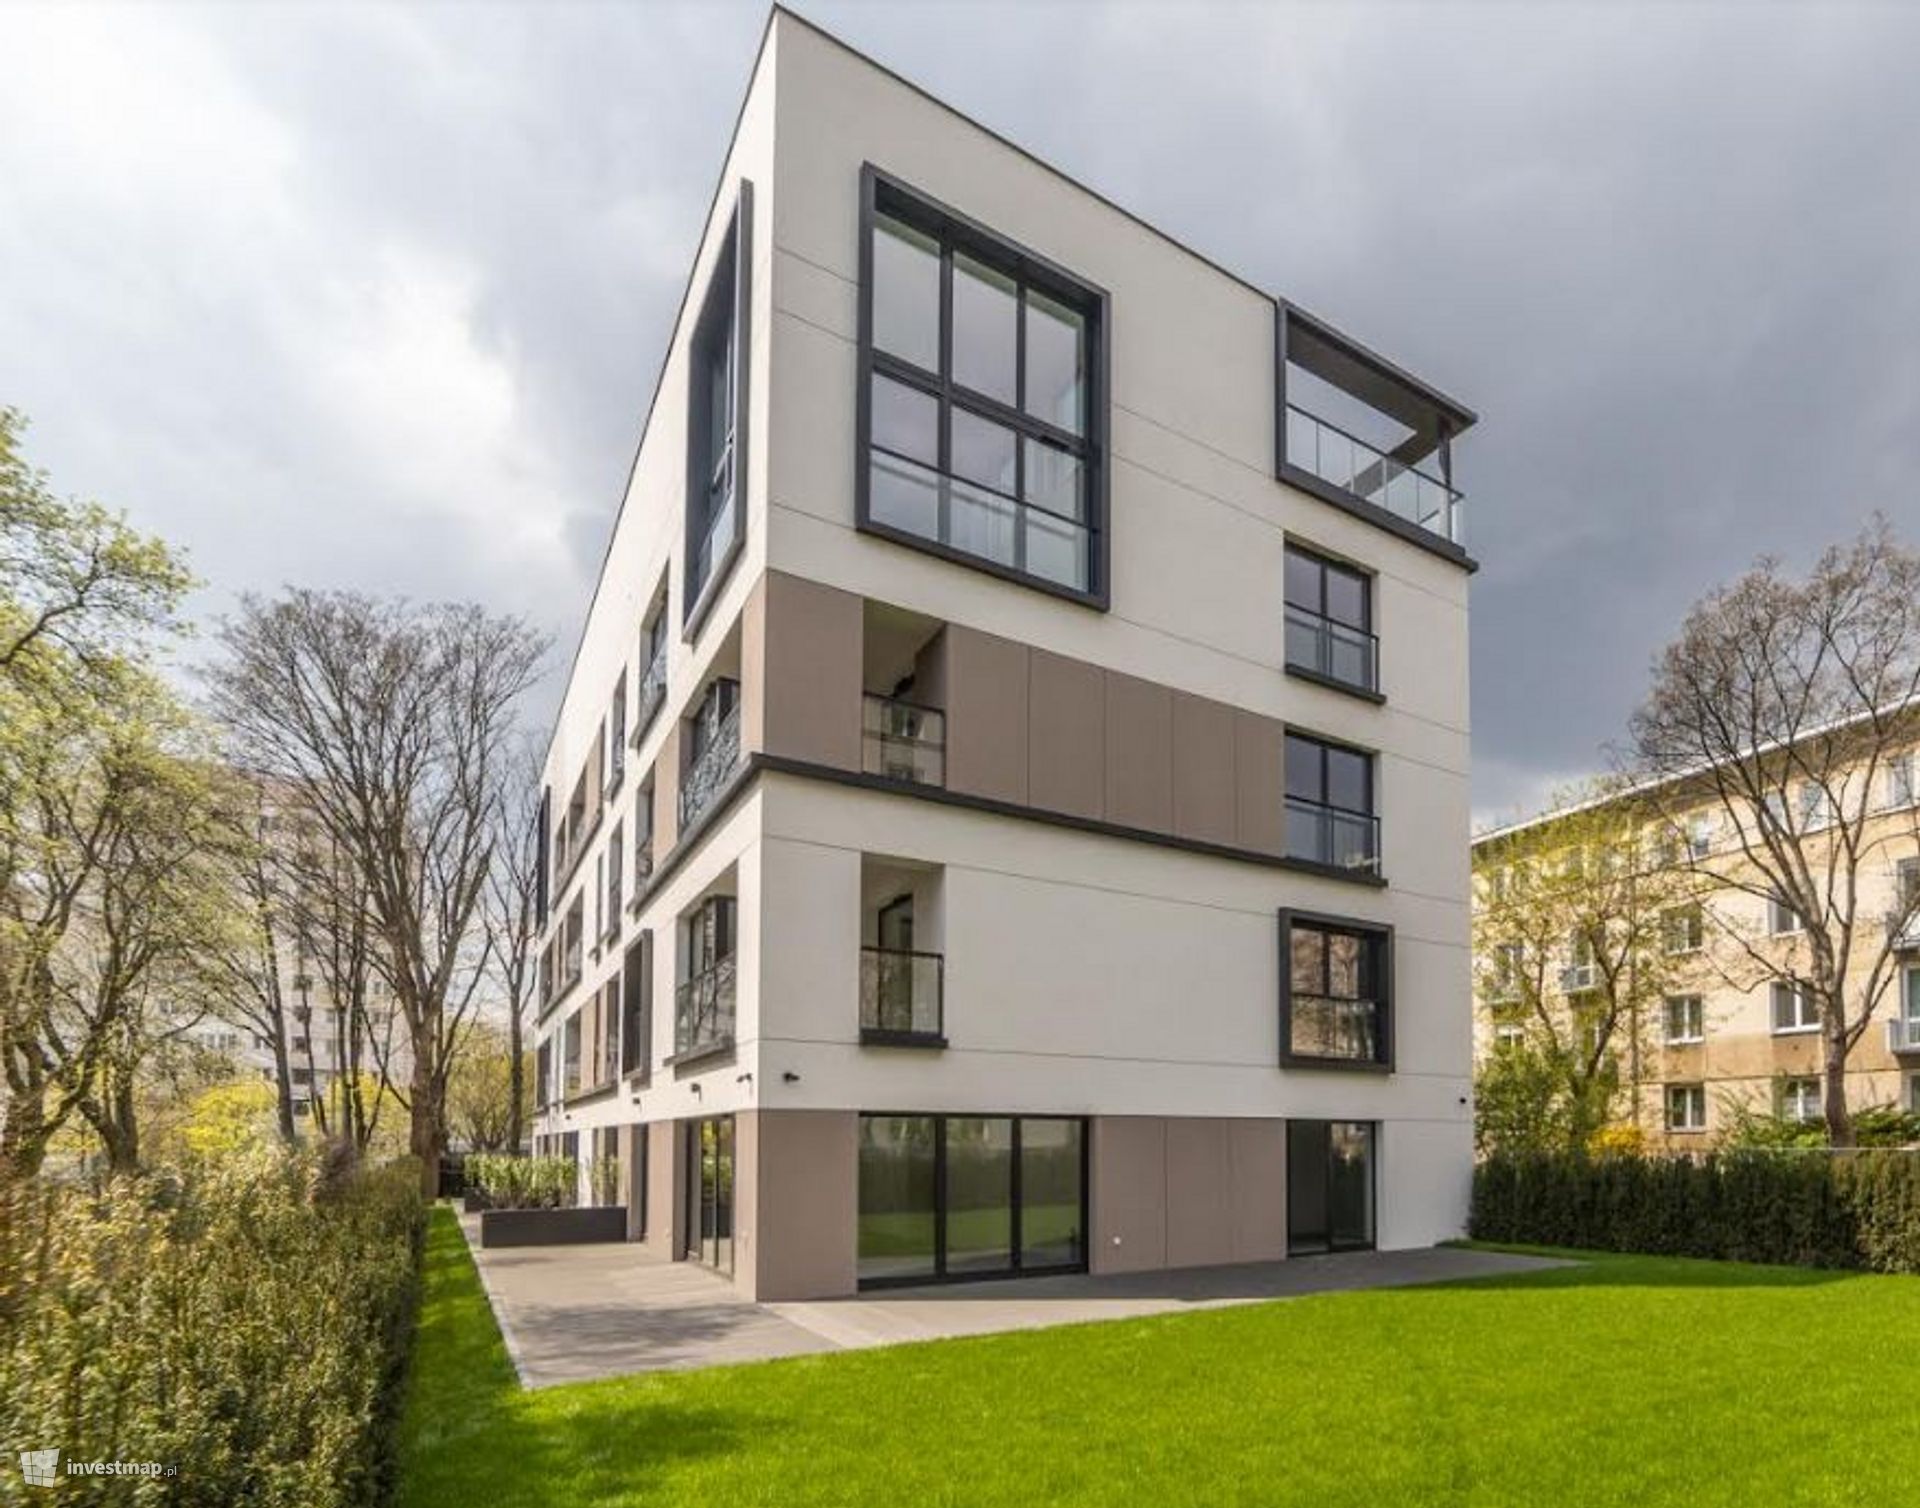 Belgijski deweloper GH Development wybuduje ponad 1500 mieszkań w Warszawie 